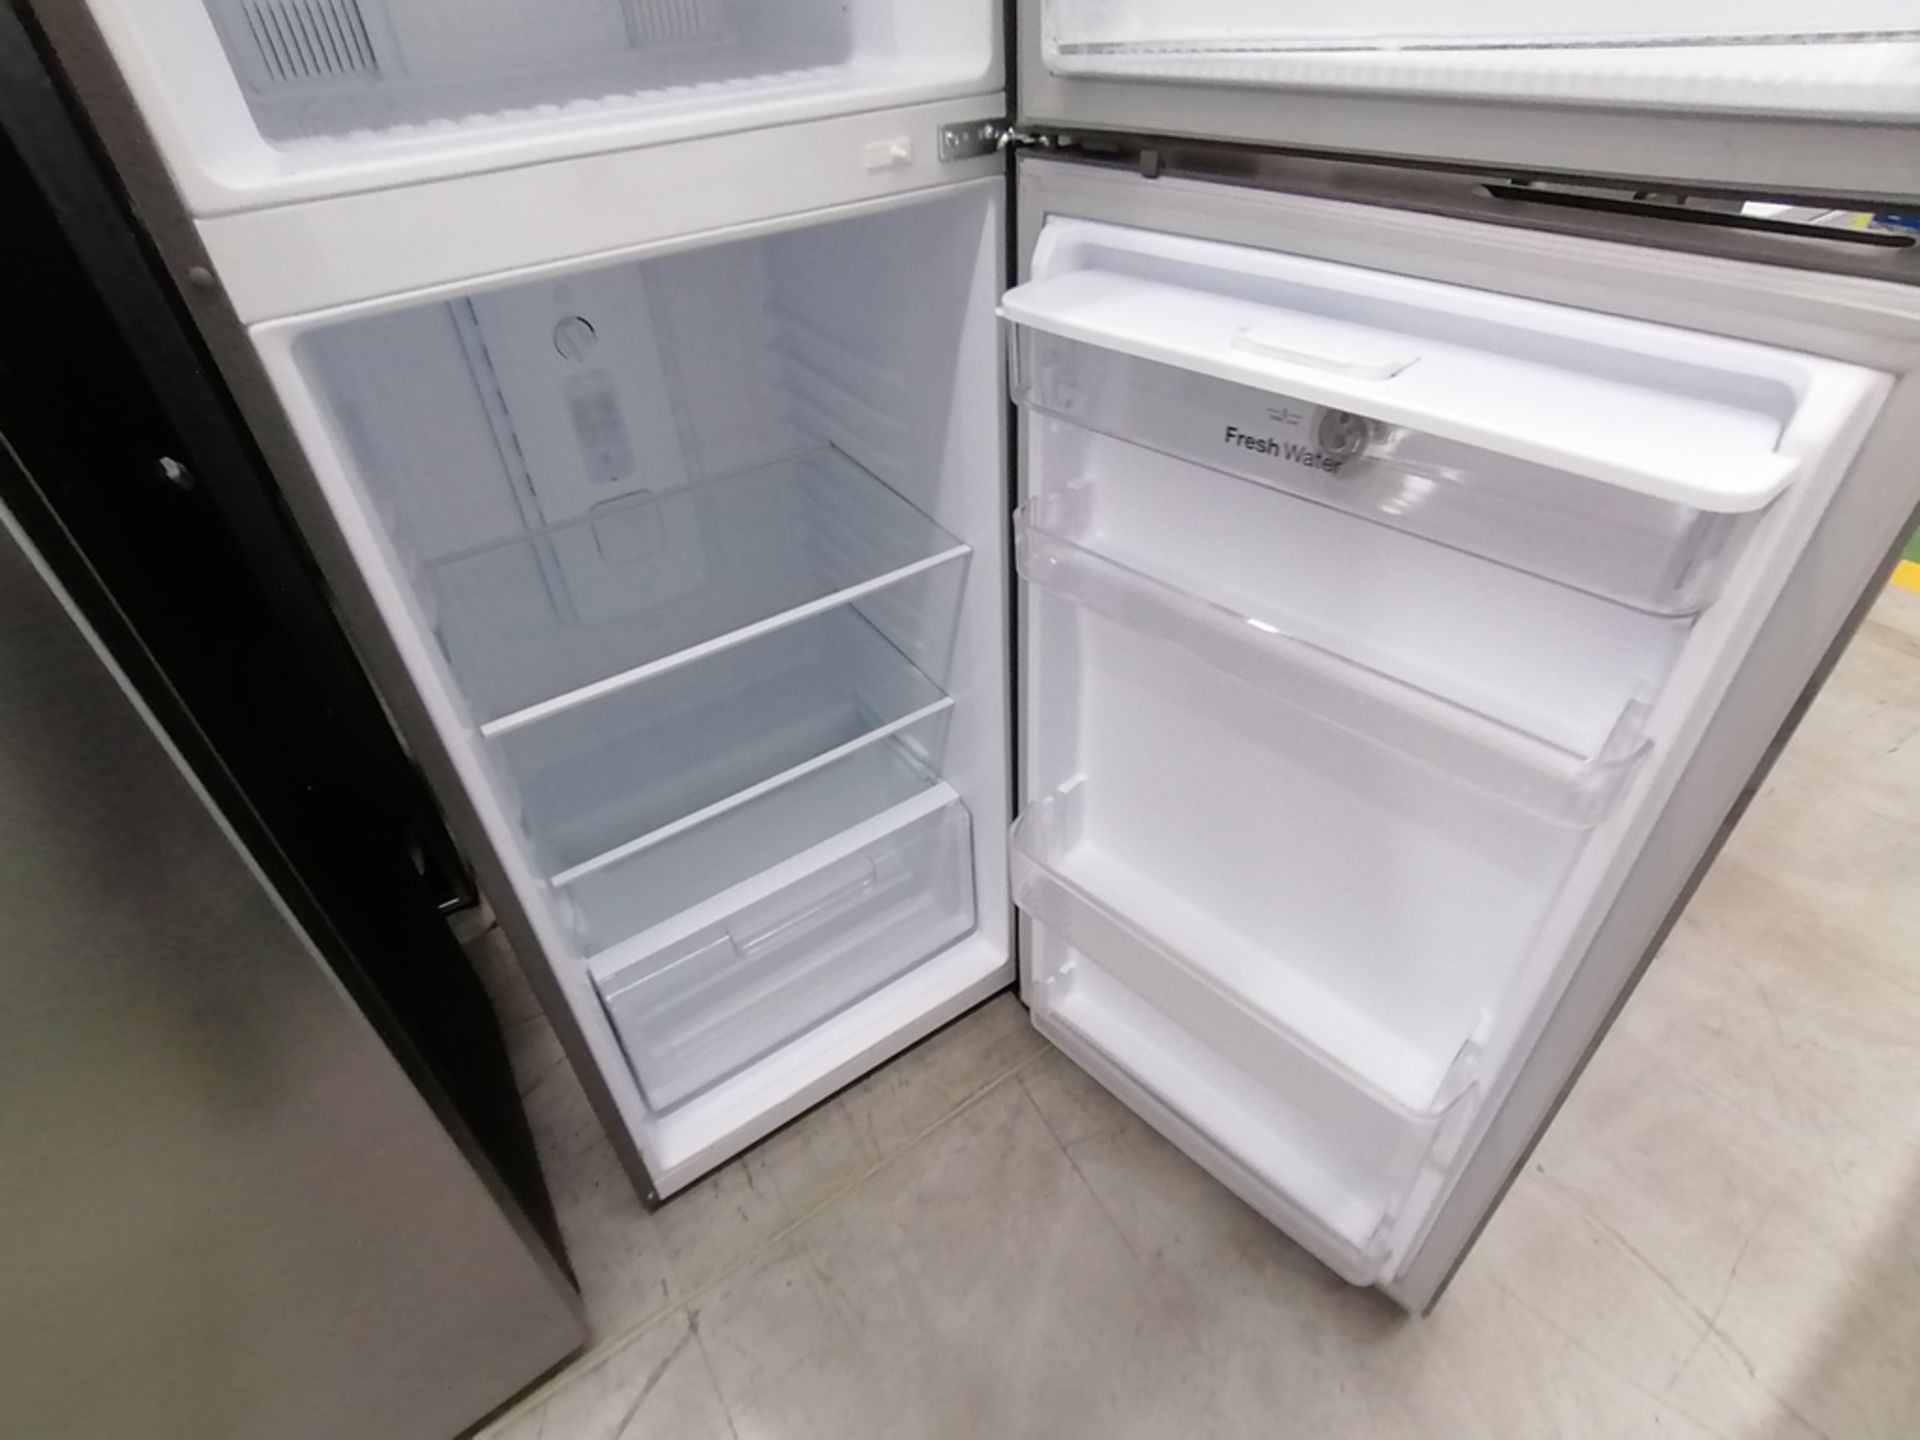 Lote de 2 refrigeradores incluye: 1 Refrigerador con dispensador de agua, Marca Winia, Modelo DFR40 - Image 5 of 15